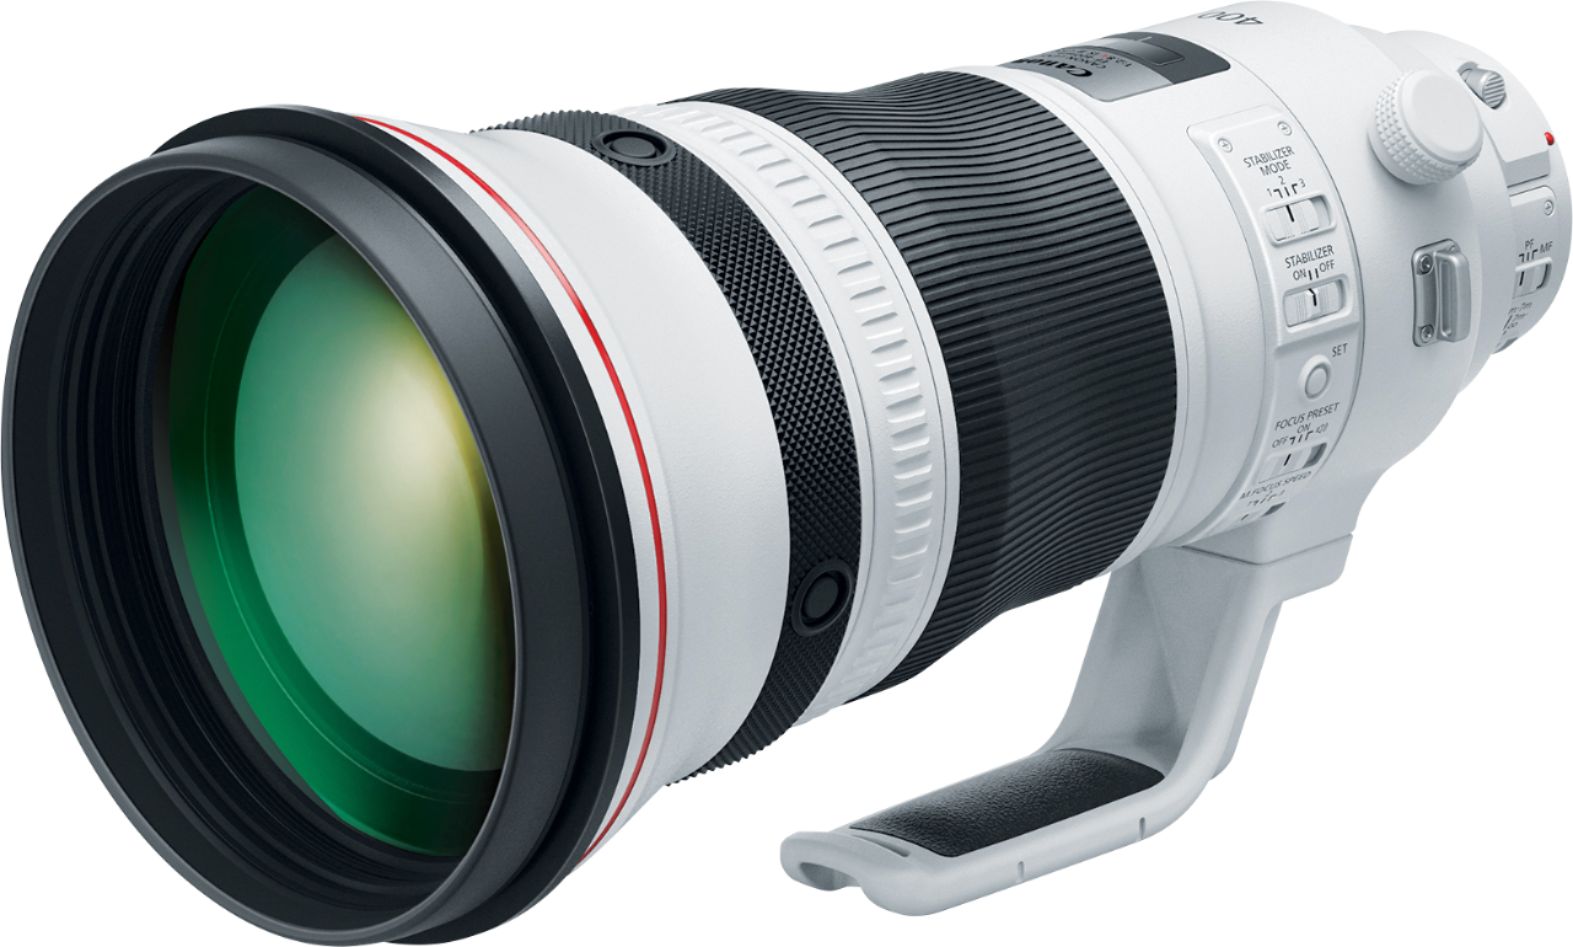 Left View: Sigma - 30mm f/1.4 DC HSM A Digital Prime Lens for Select DSLR Cameras - Black